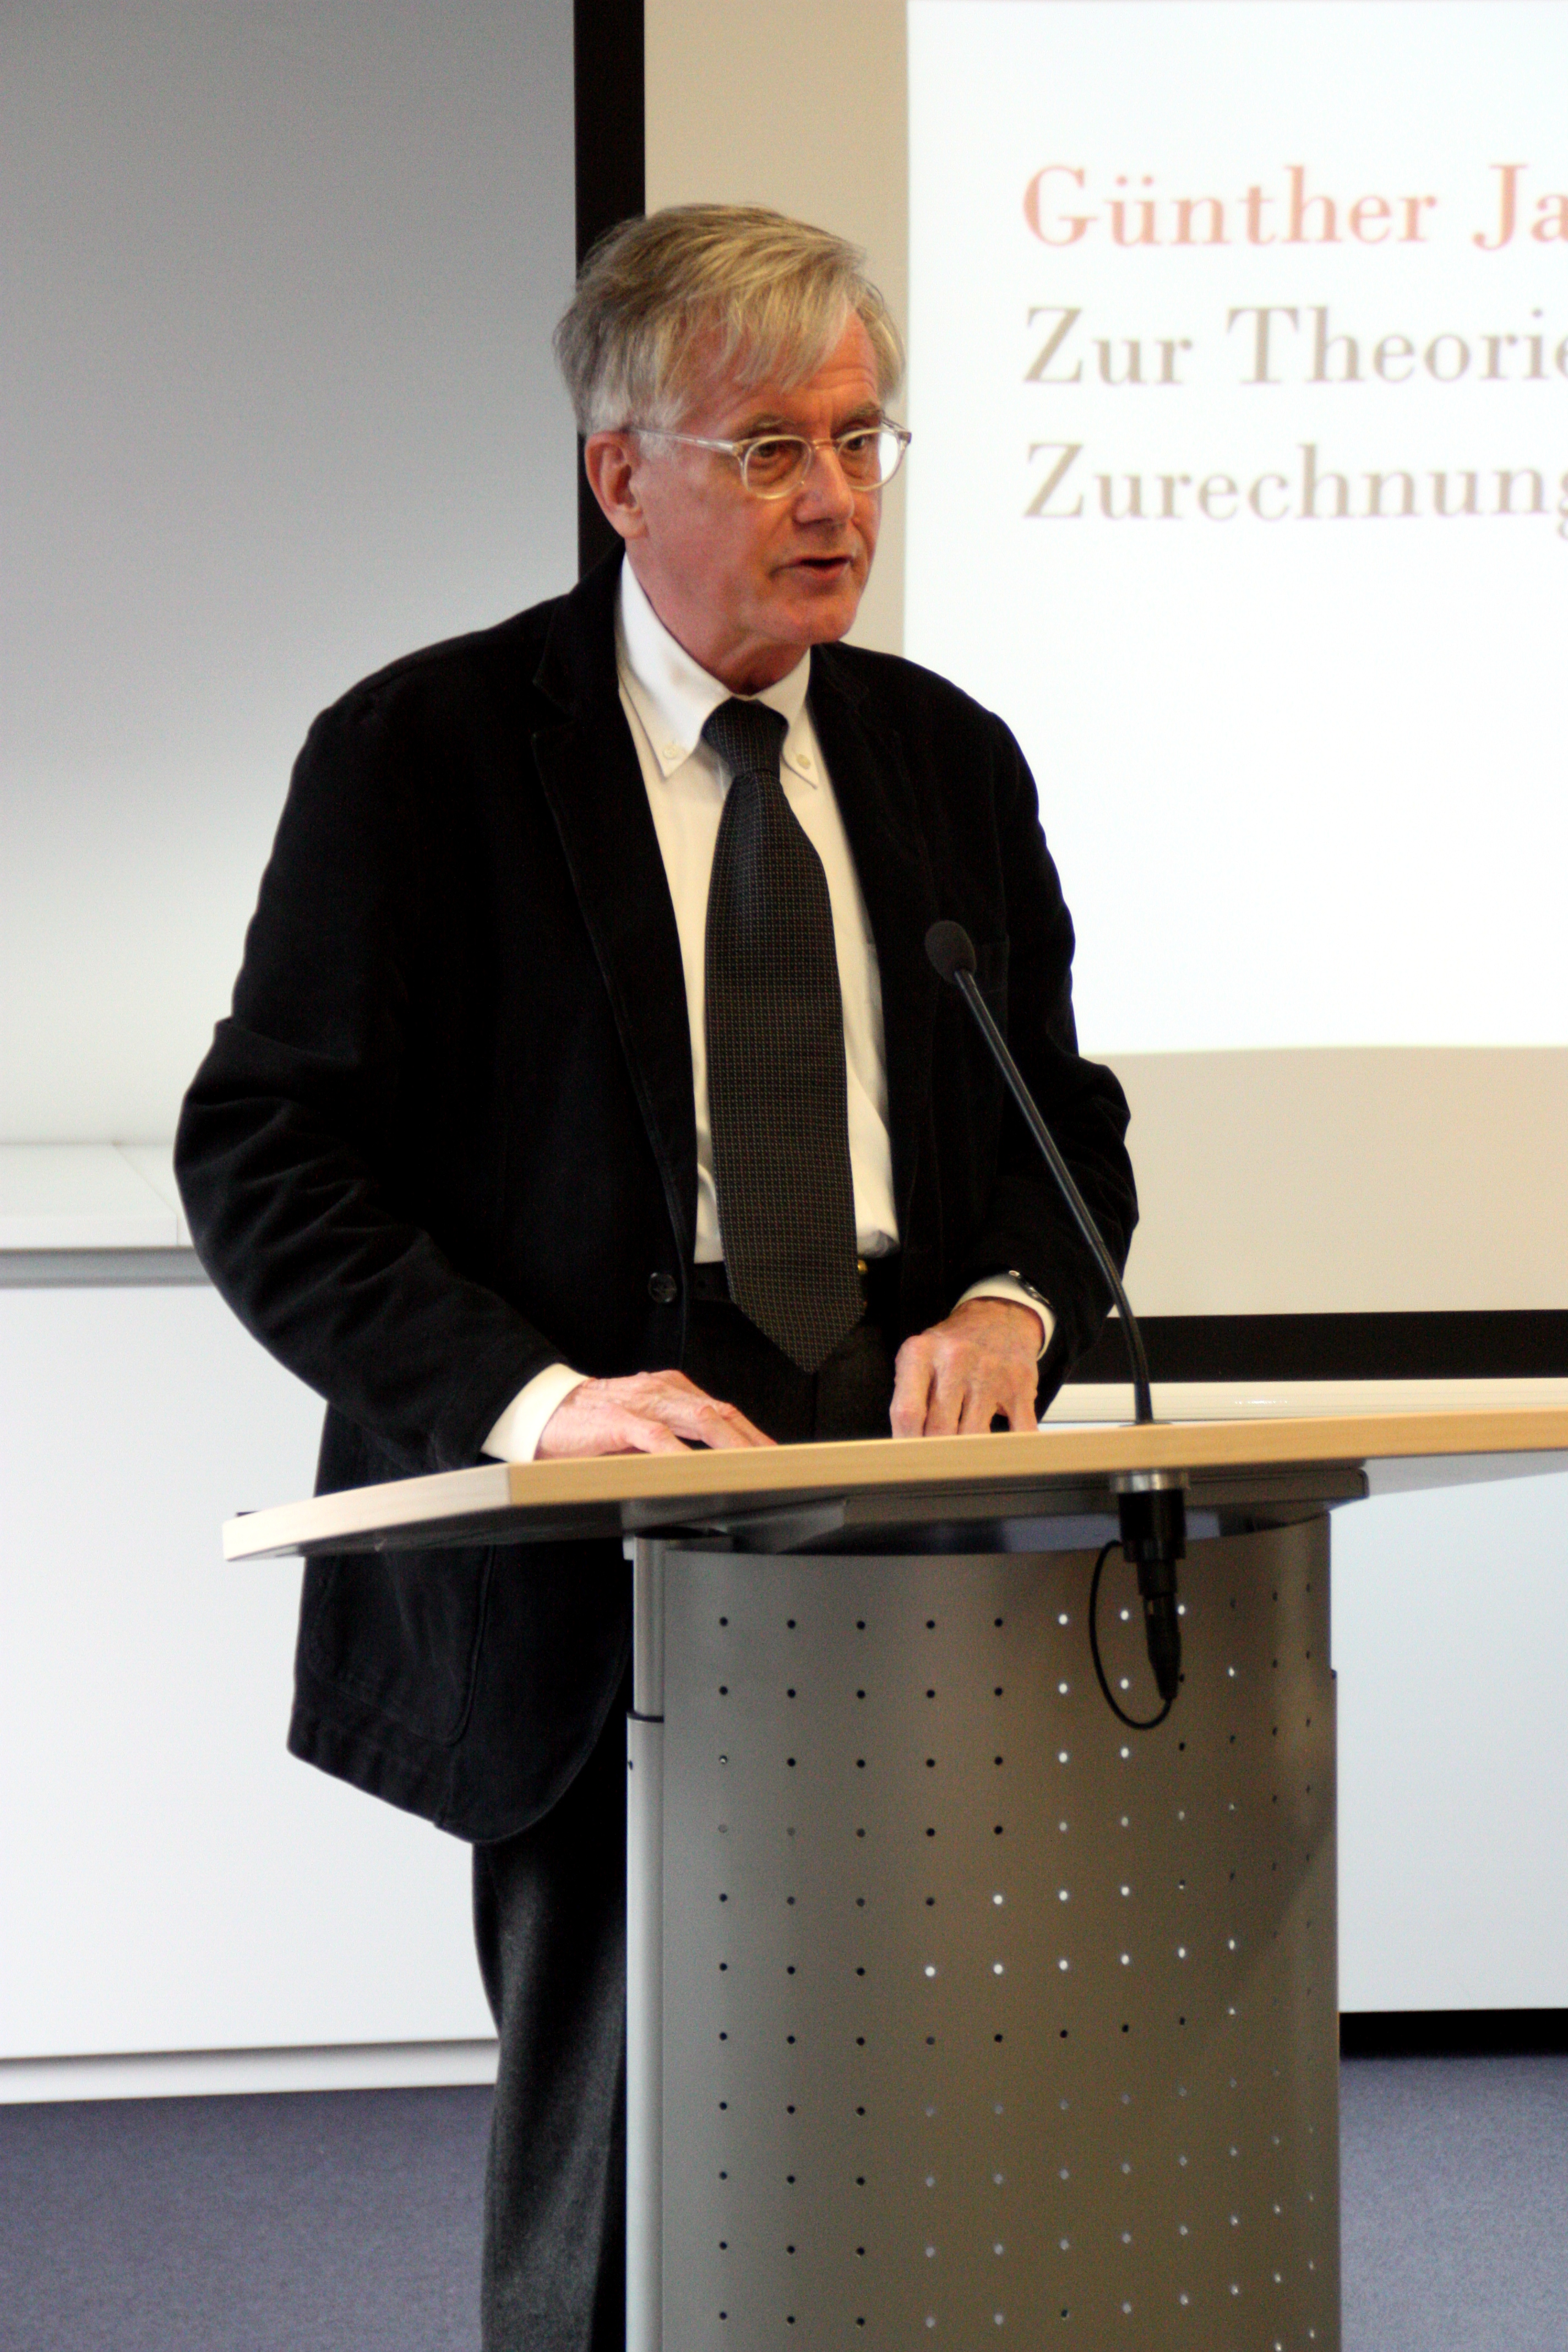 Günther Jakobs német jogfilozófus professzor